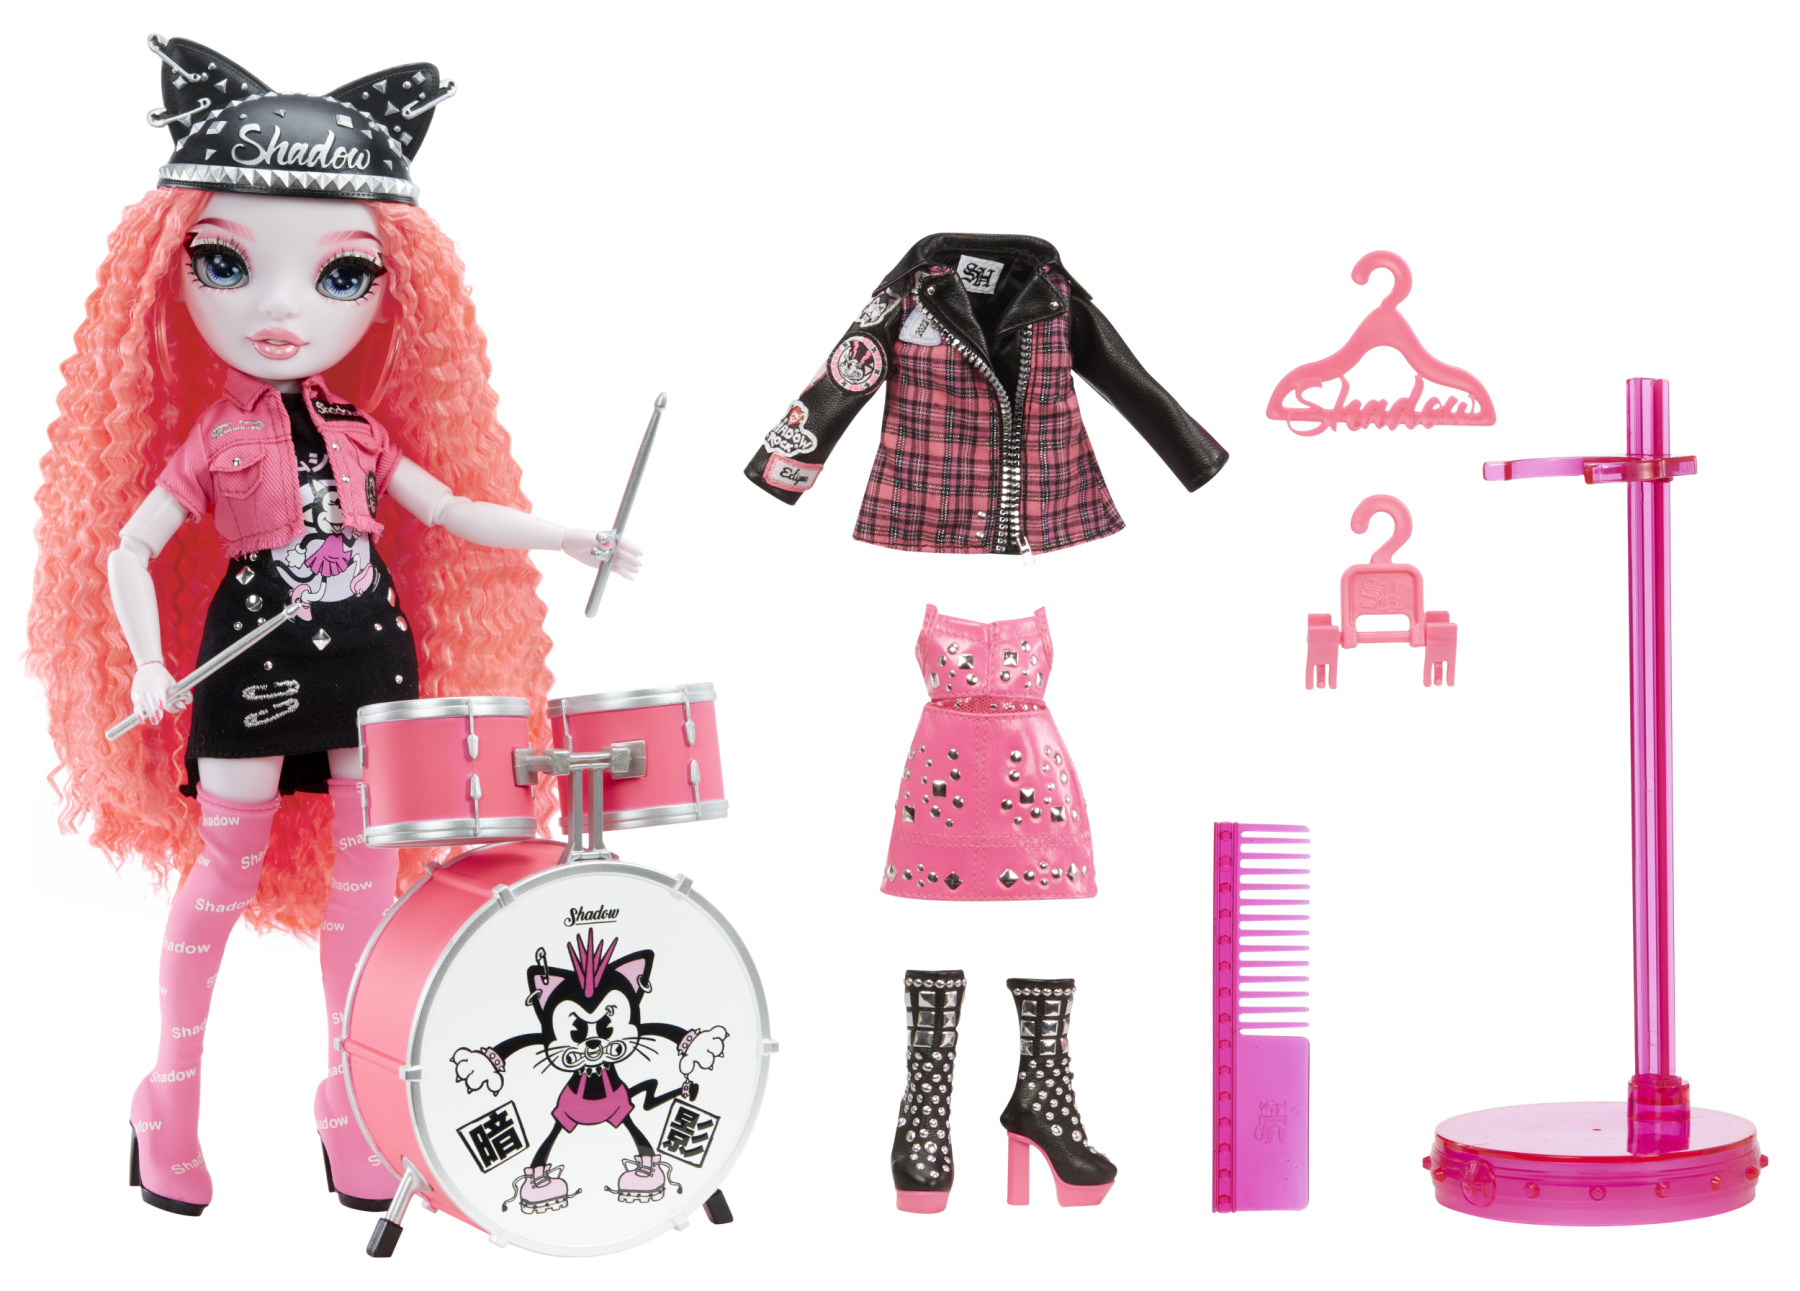 Shadow high rainbow vision neon shadow - mara pinkett - bambola alla moda rosa elettrico, accessori per rock band e outfit - Rainbow High